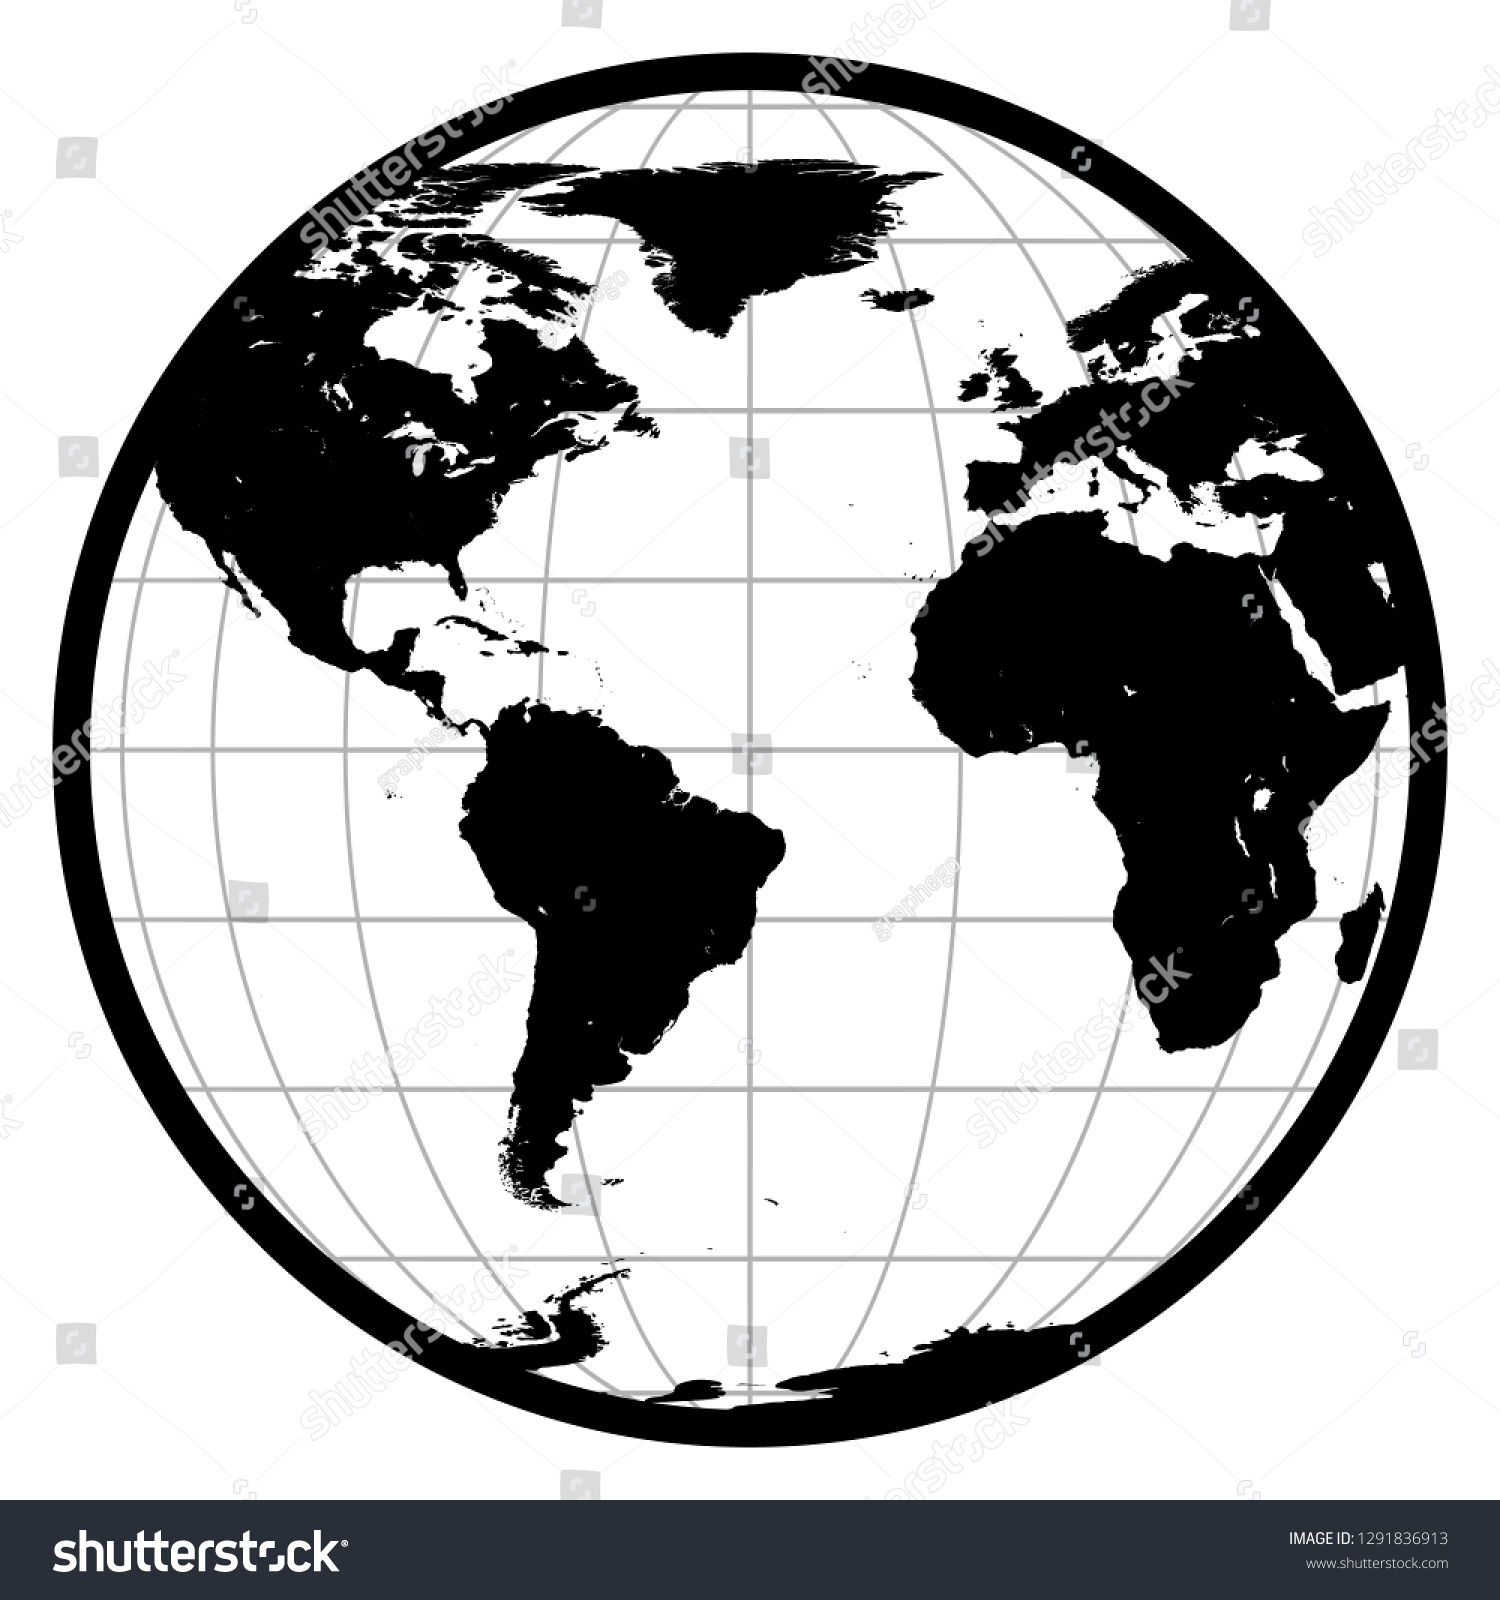 アメリカ アフリカ ヨーロッパの地球儀白い背景に白黒のシルエット地球アイコン イラスト のイラスト素材